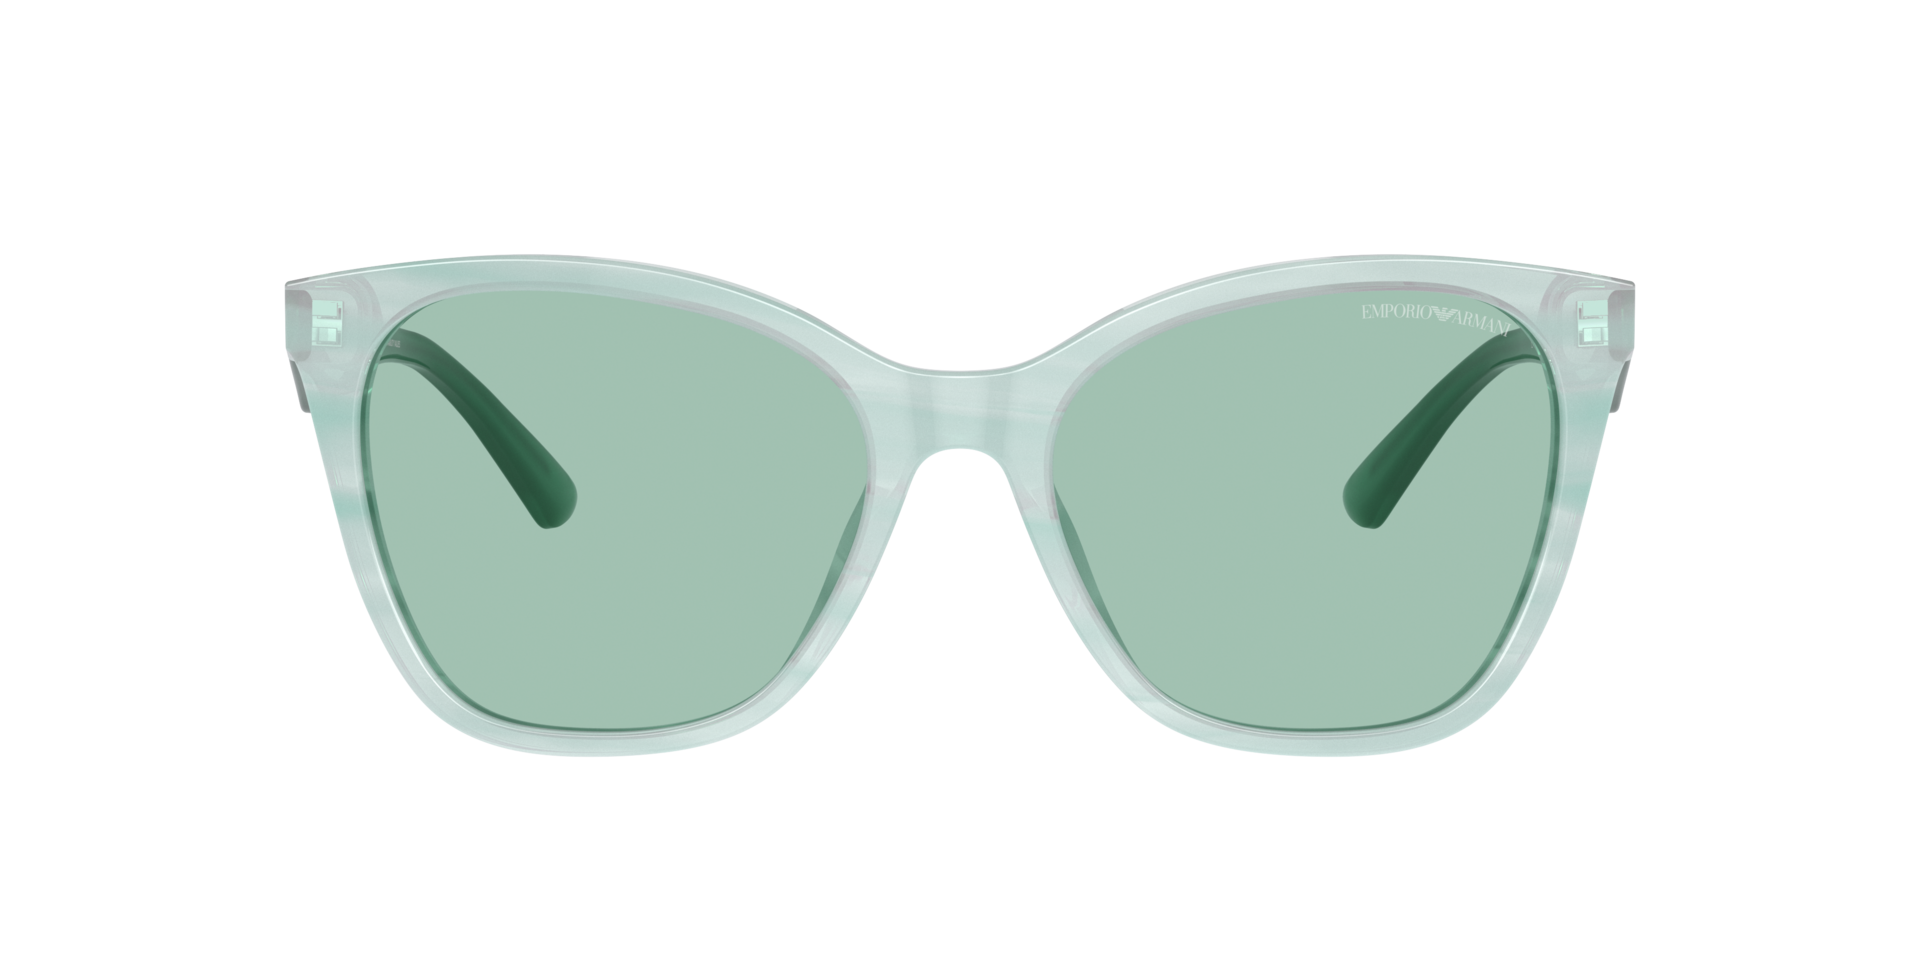 Das Bild zeigt die Sonnenbrille EA4222 611271 von der Marke Emporio Armani in grün.